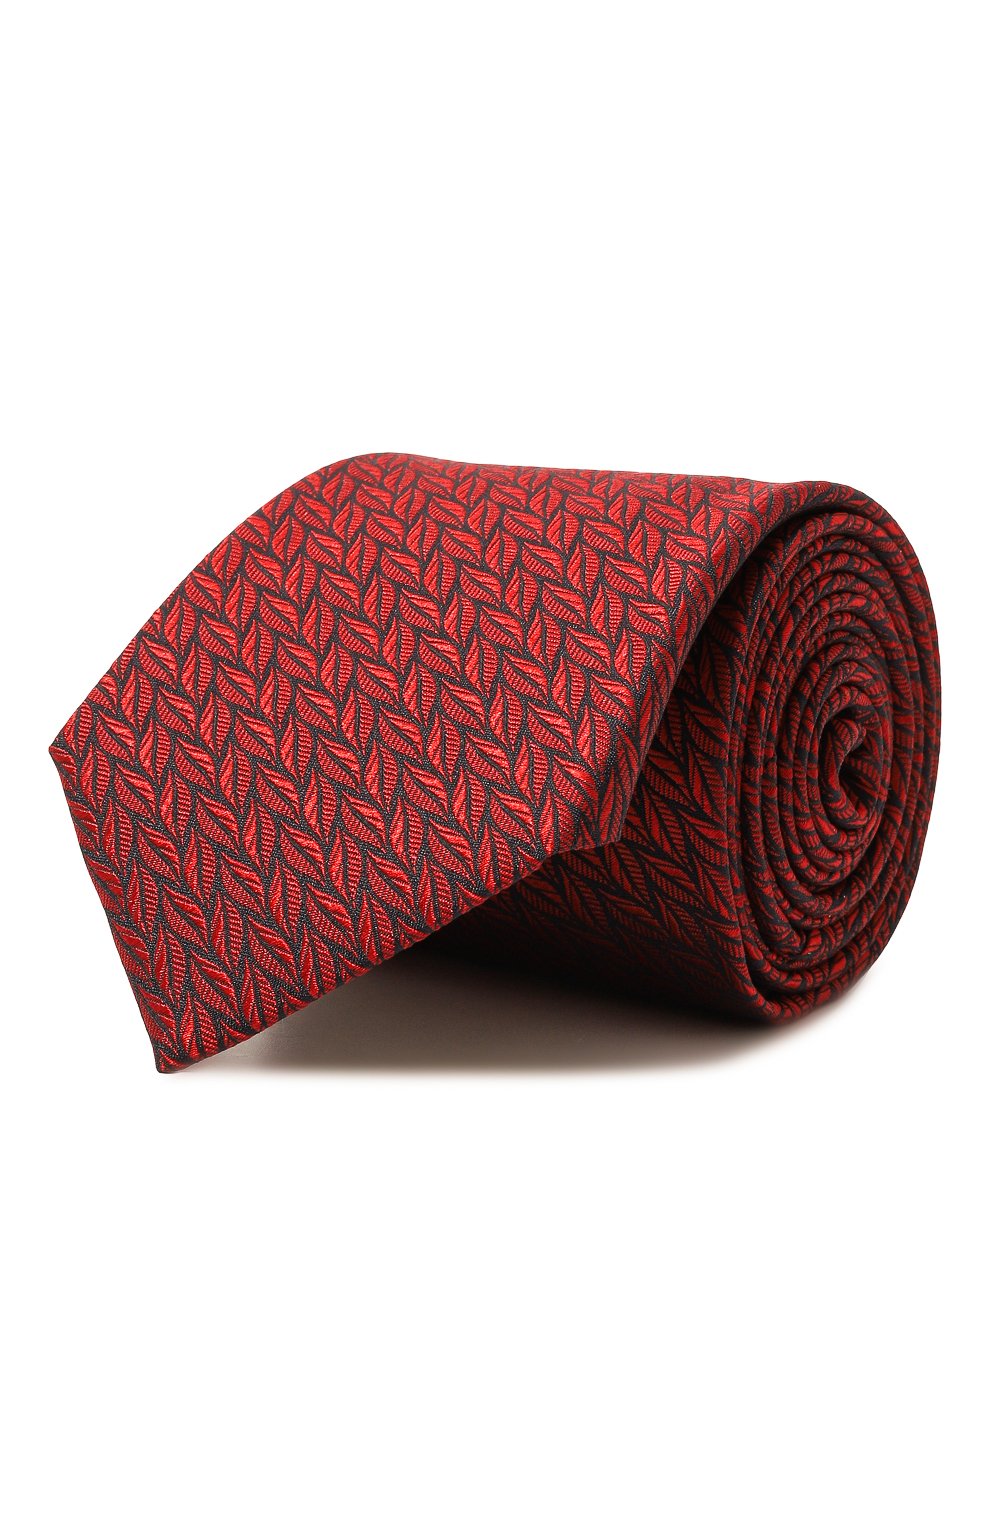 С принтом Canali, Шелковый галстук Canali, Италия, Красный, Шелк: 100%;, 13378050  - купить